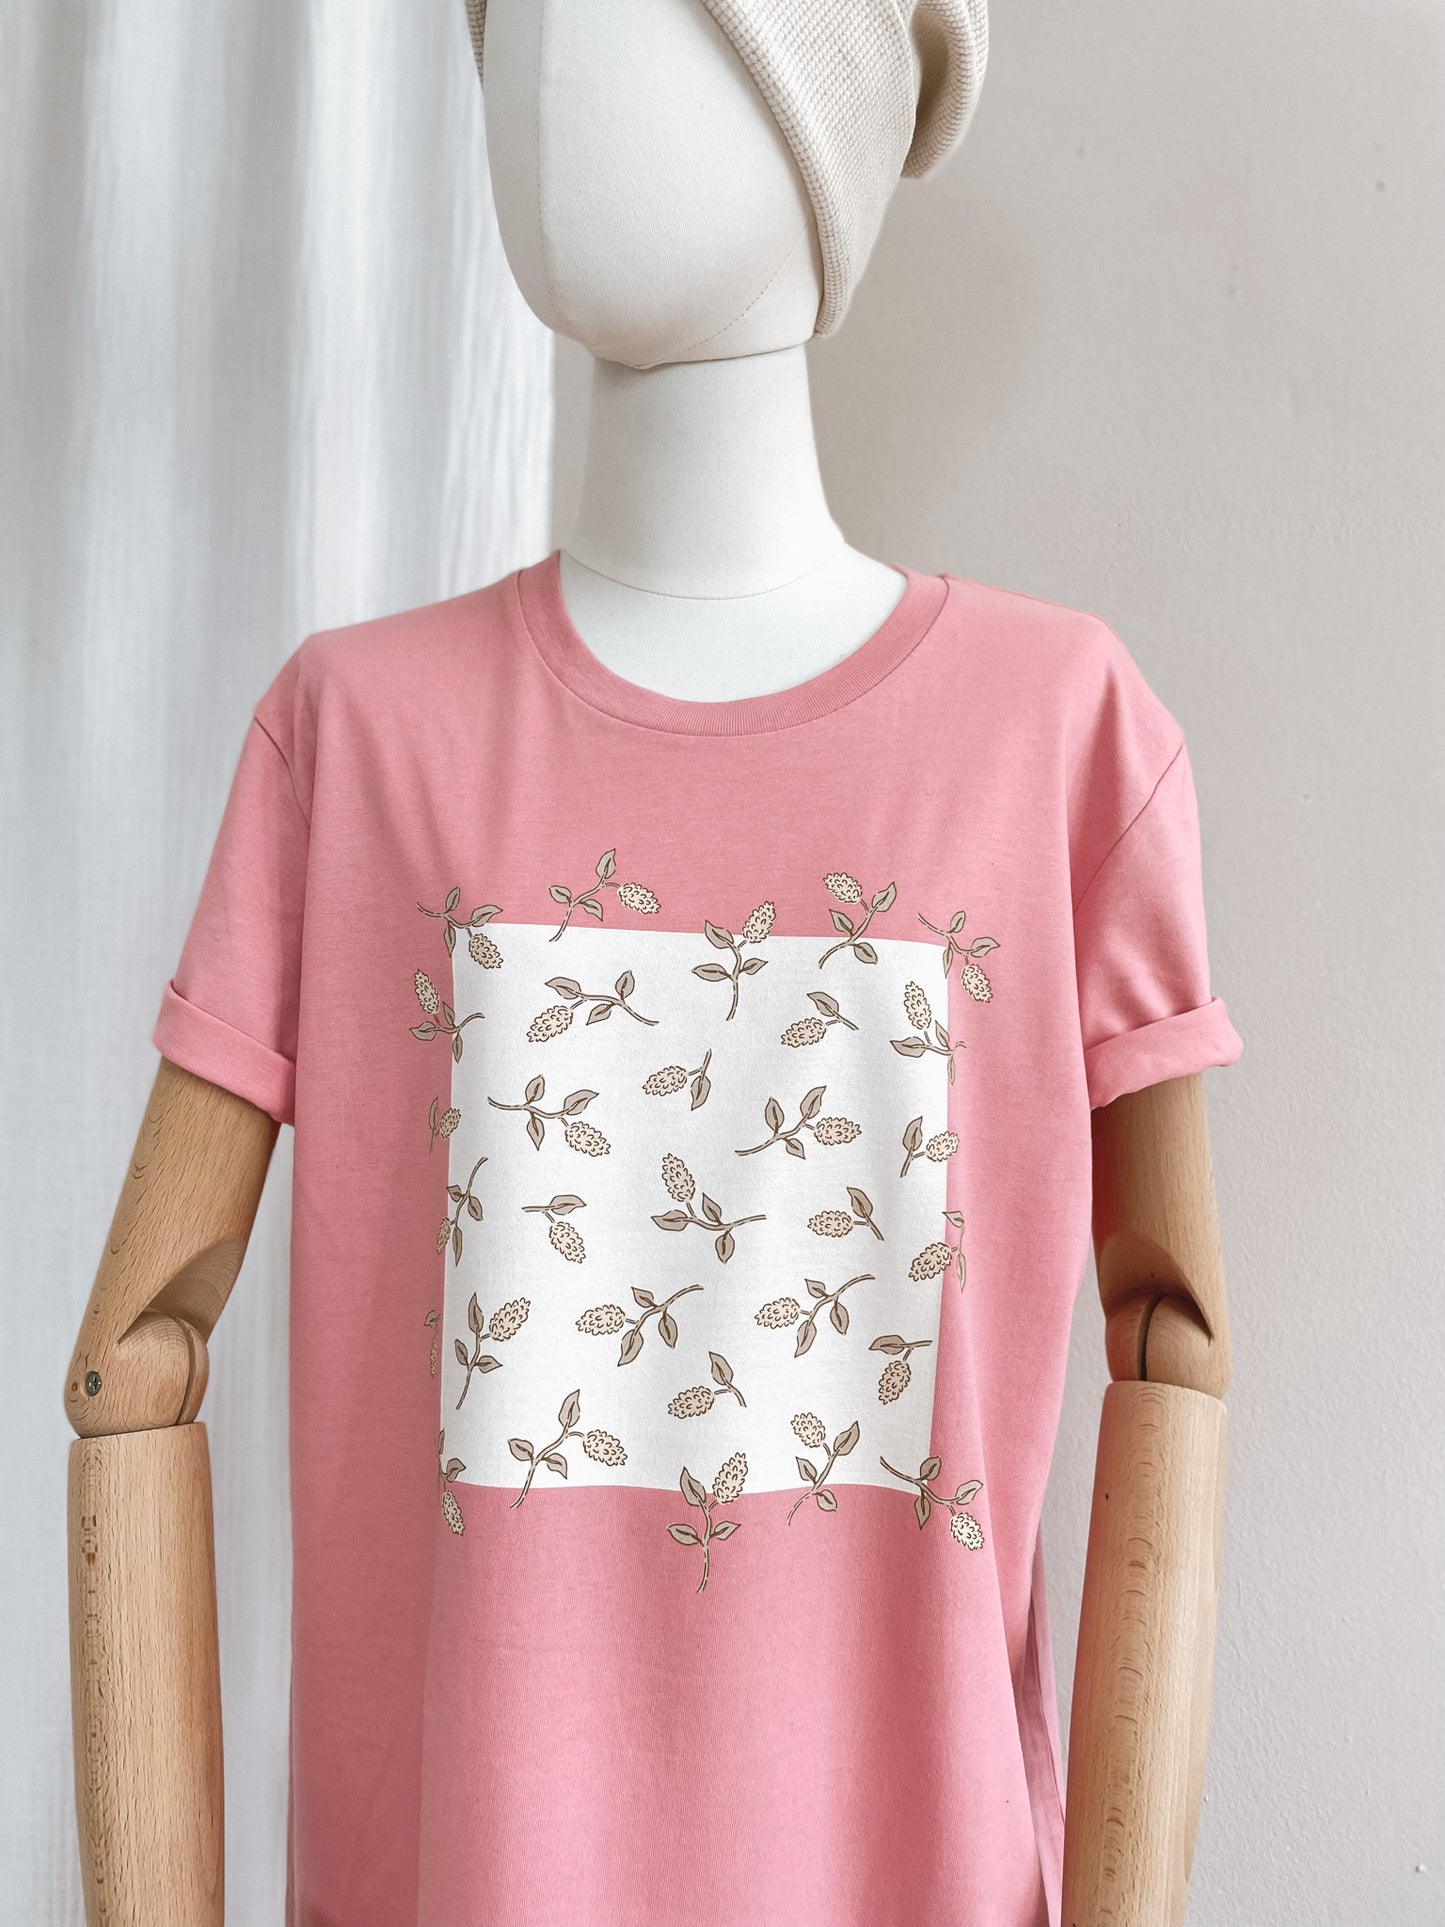 T-shirt dress / just floral / bubble gum